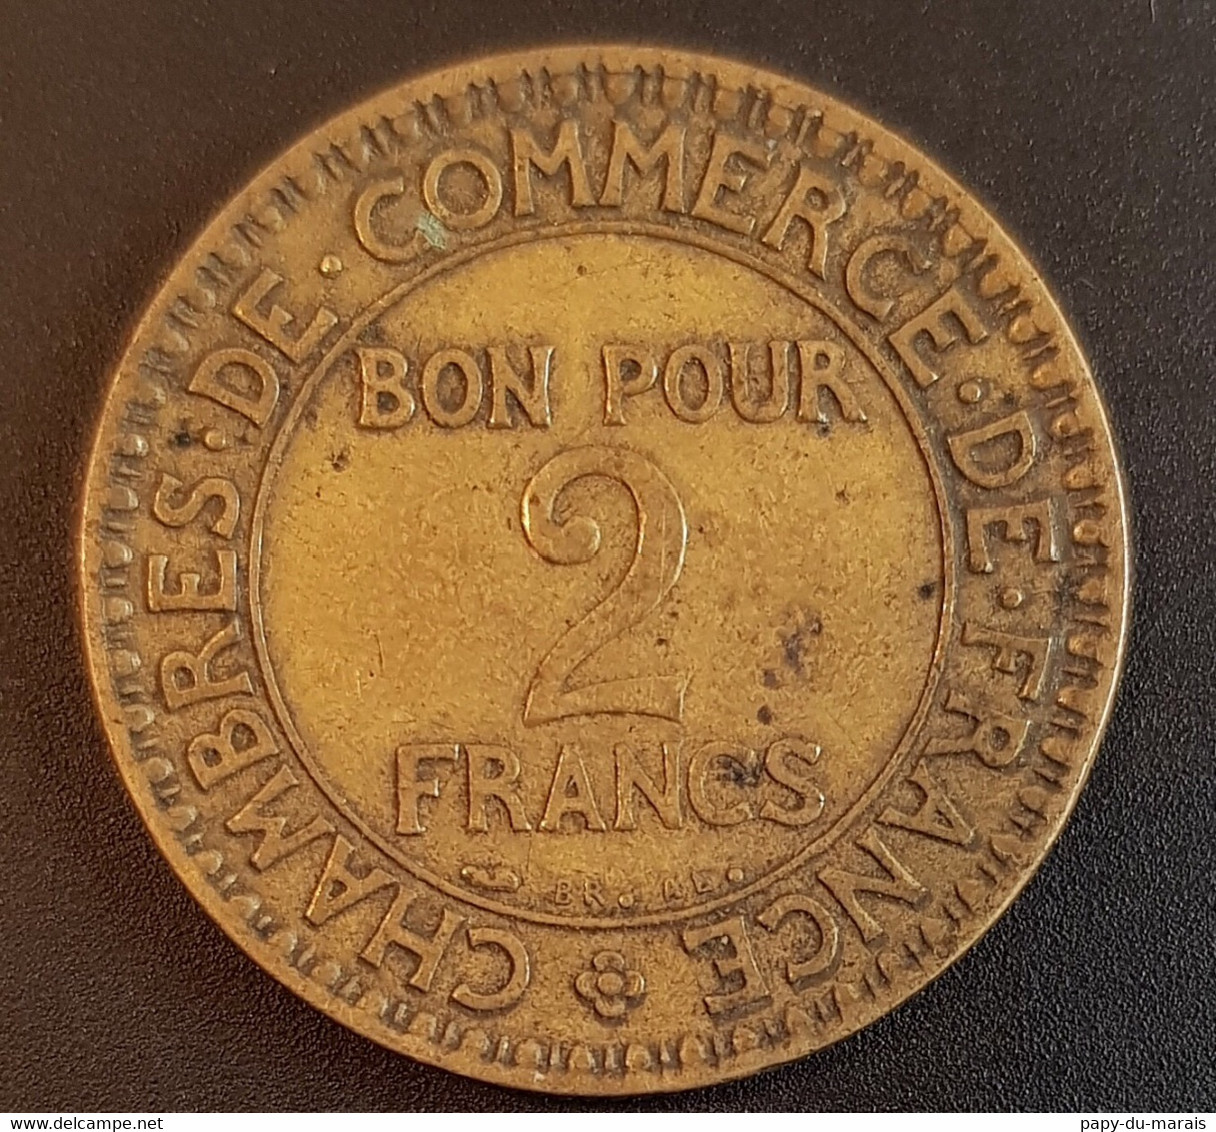 Pièce Fautée (?) 2 Francs 1925 France - Percée Au Centre+ Manque D De Domard - Errors & Oddities